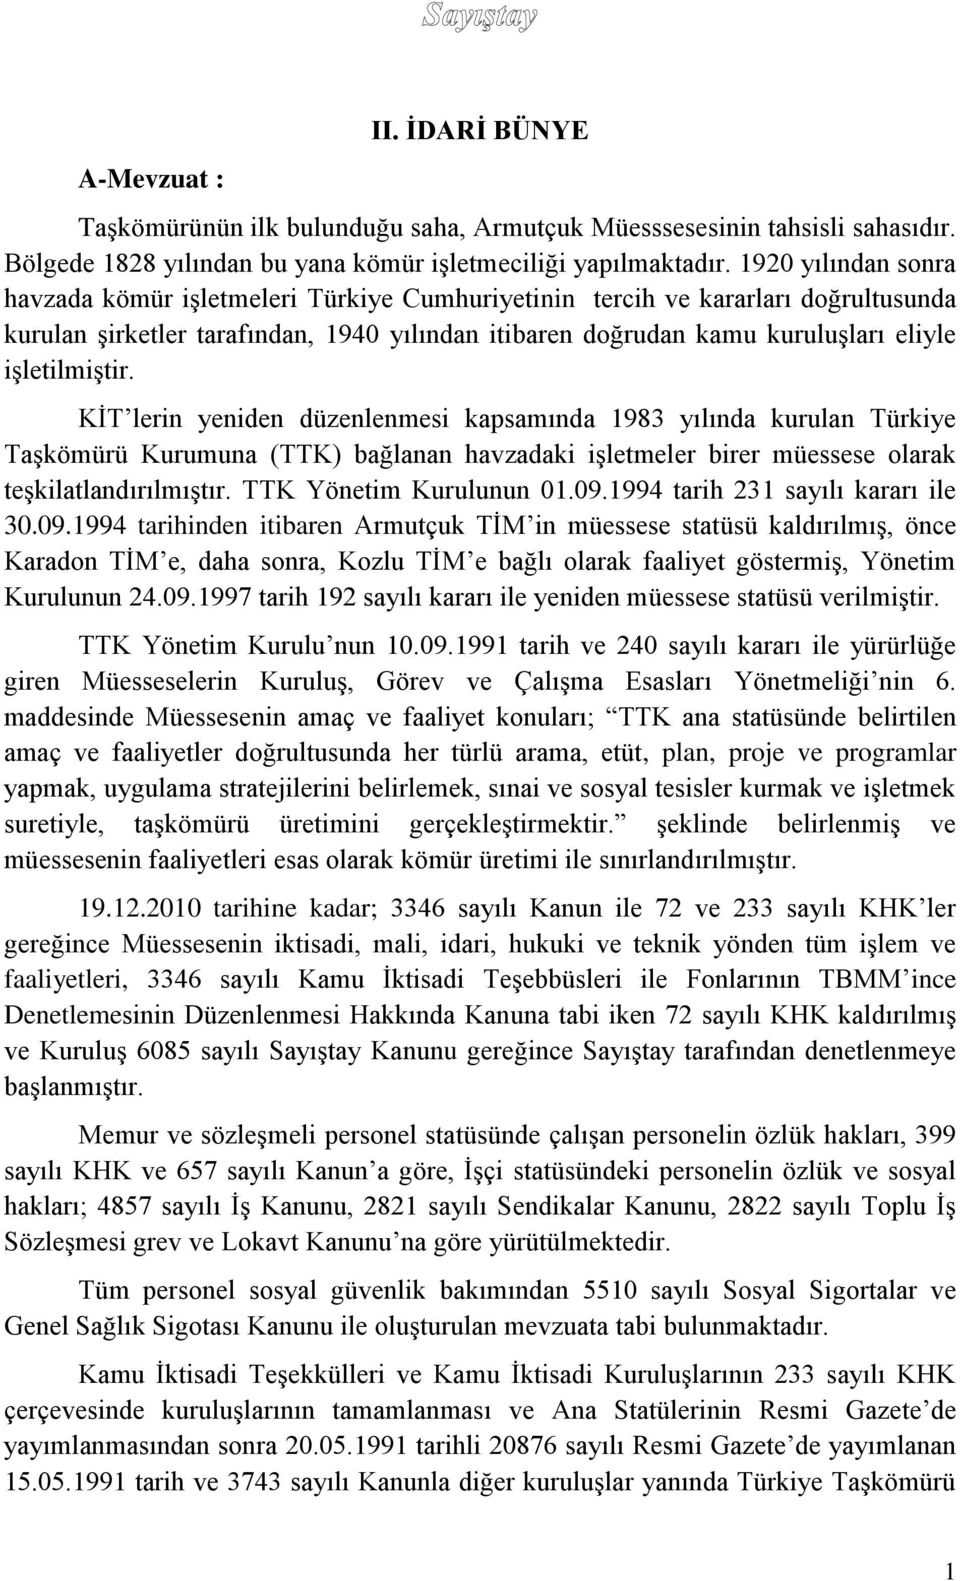 işletilmiştir. KİT lerin yeniden düzenlenmesi kapsamında 1983 yılında kurulan Türkiye Taşkömürü Kurumuna (TTK) bağlanan havzadaki işletmeler birer müessese olarak teşkilatlandırılmıştır.